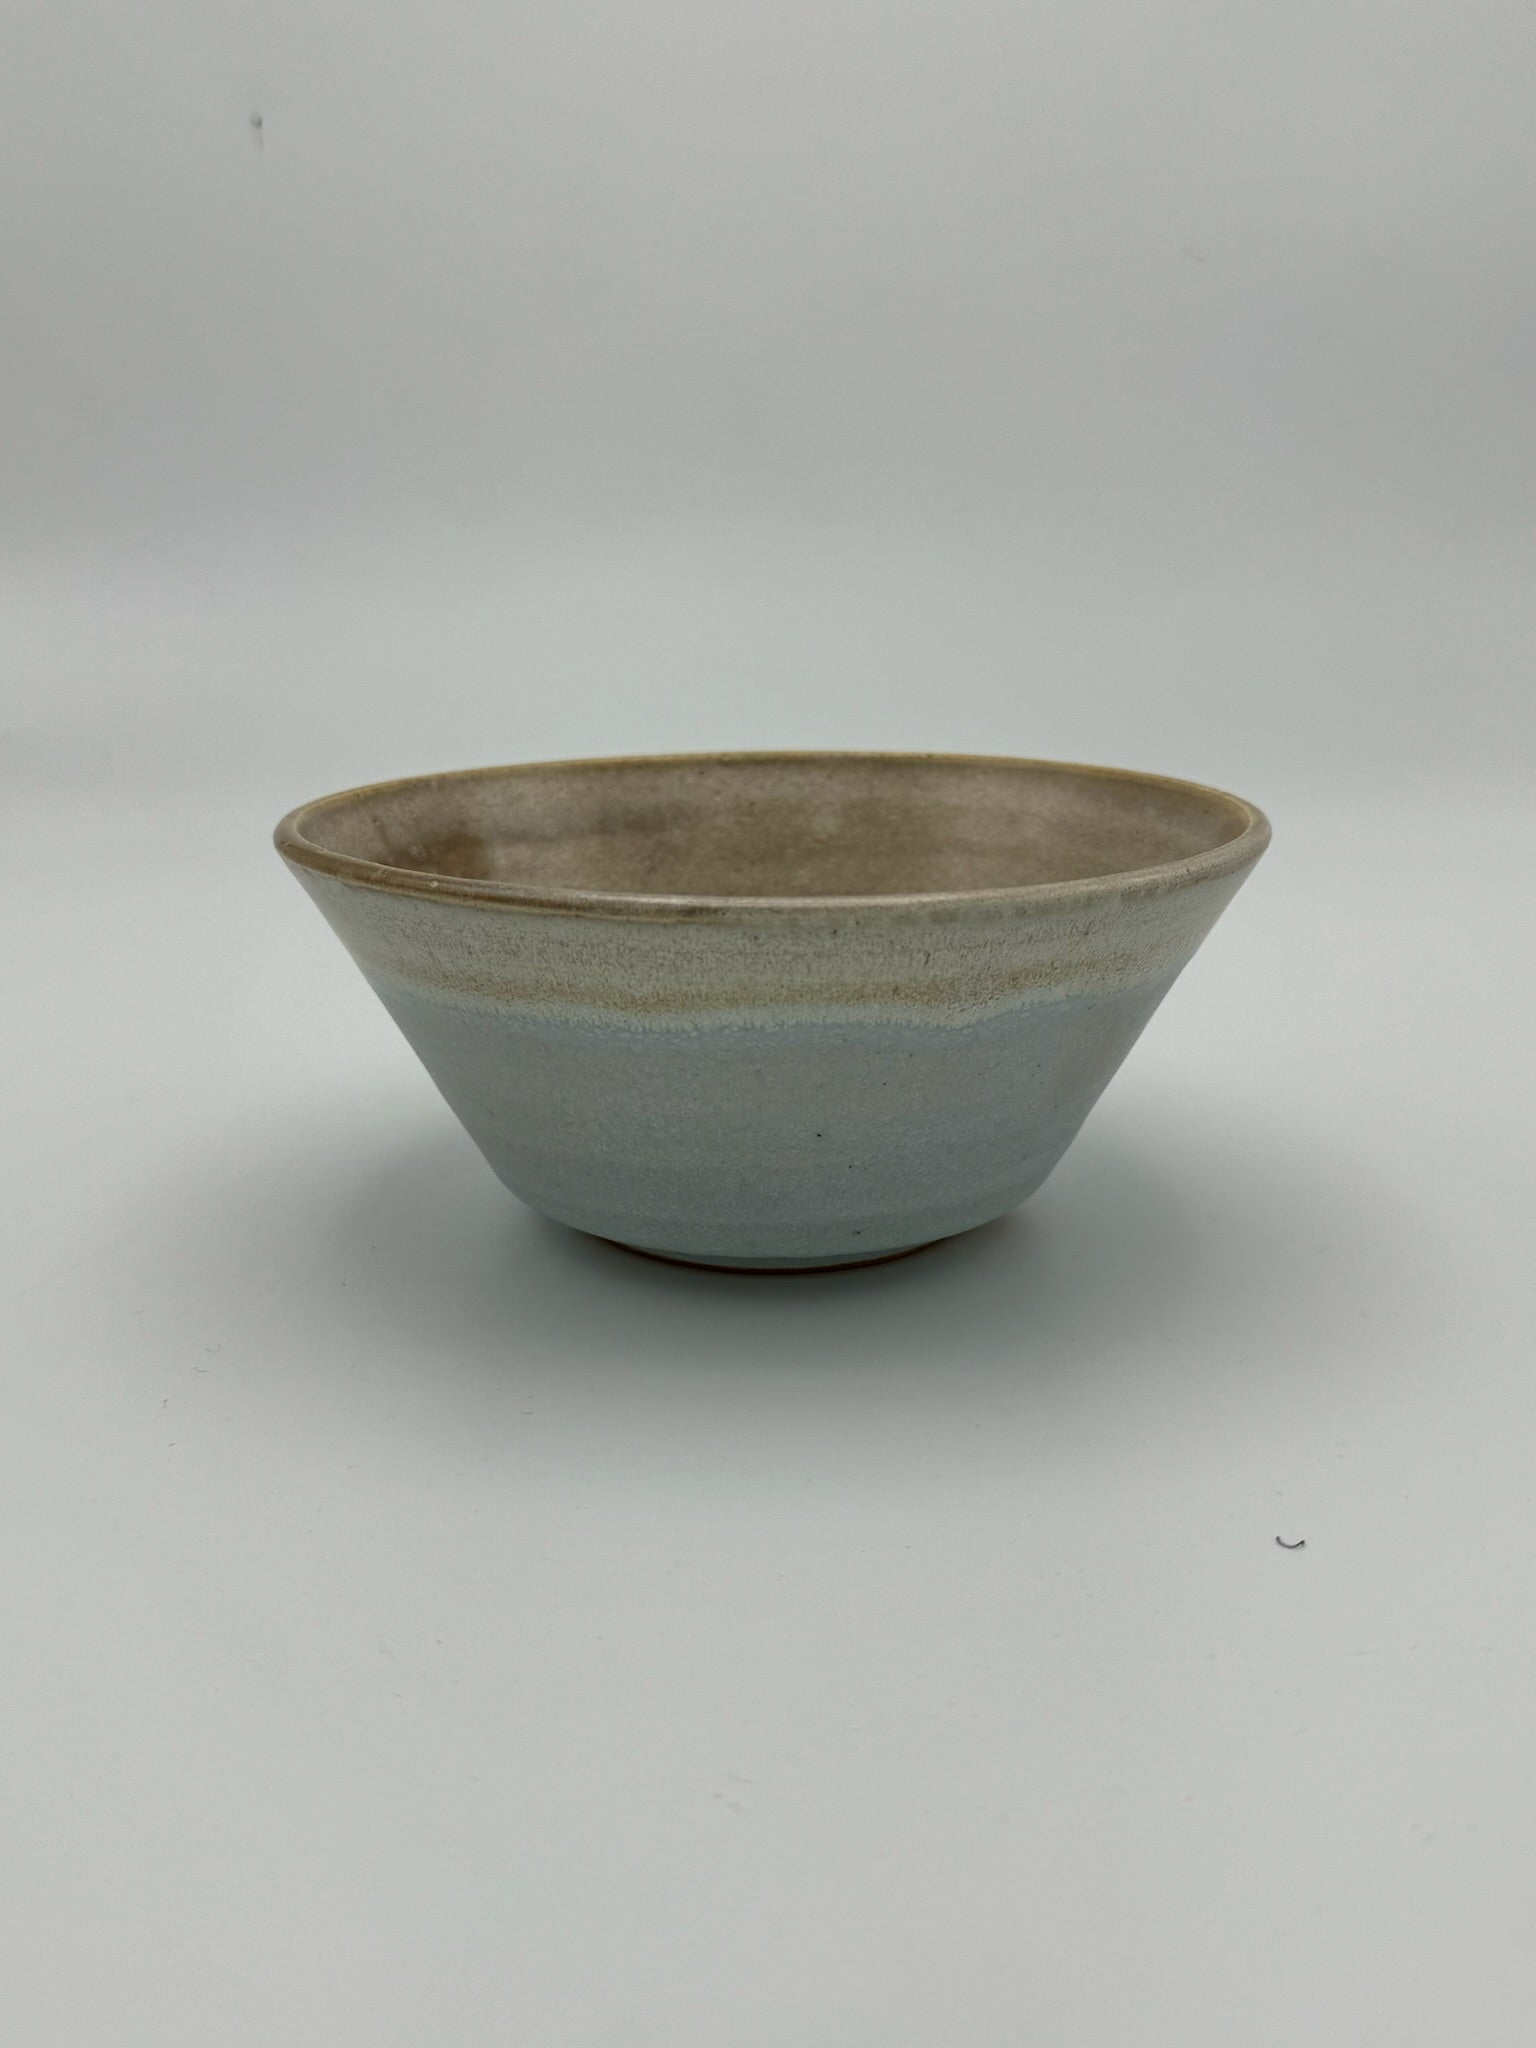 Vortex bowl